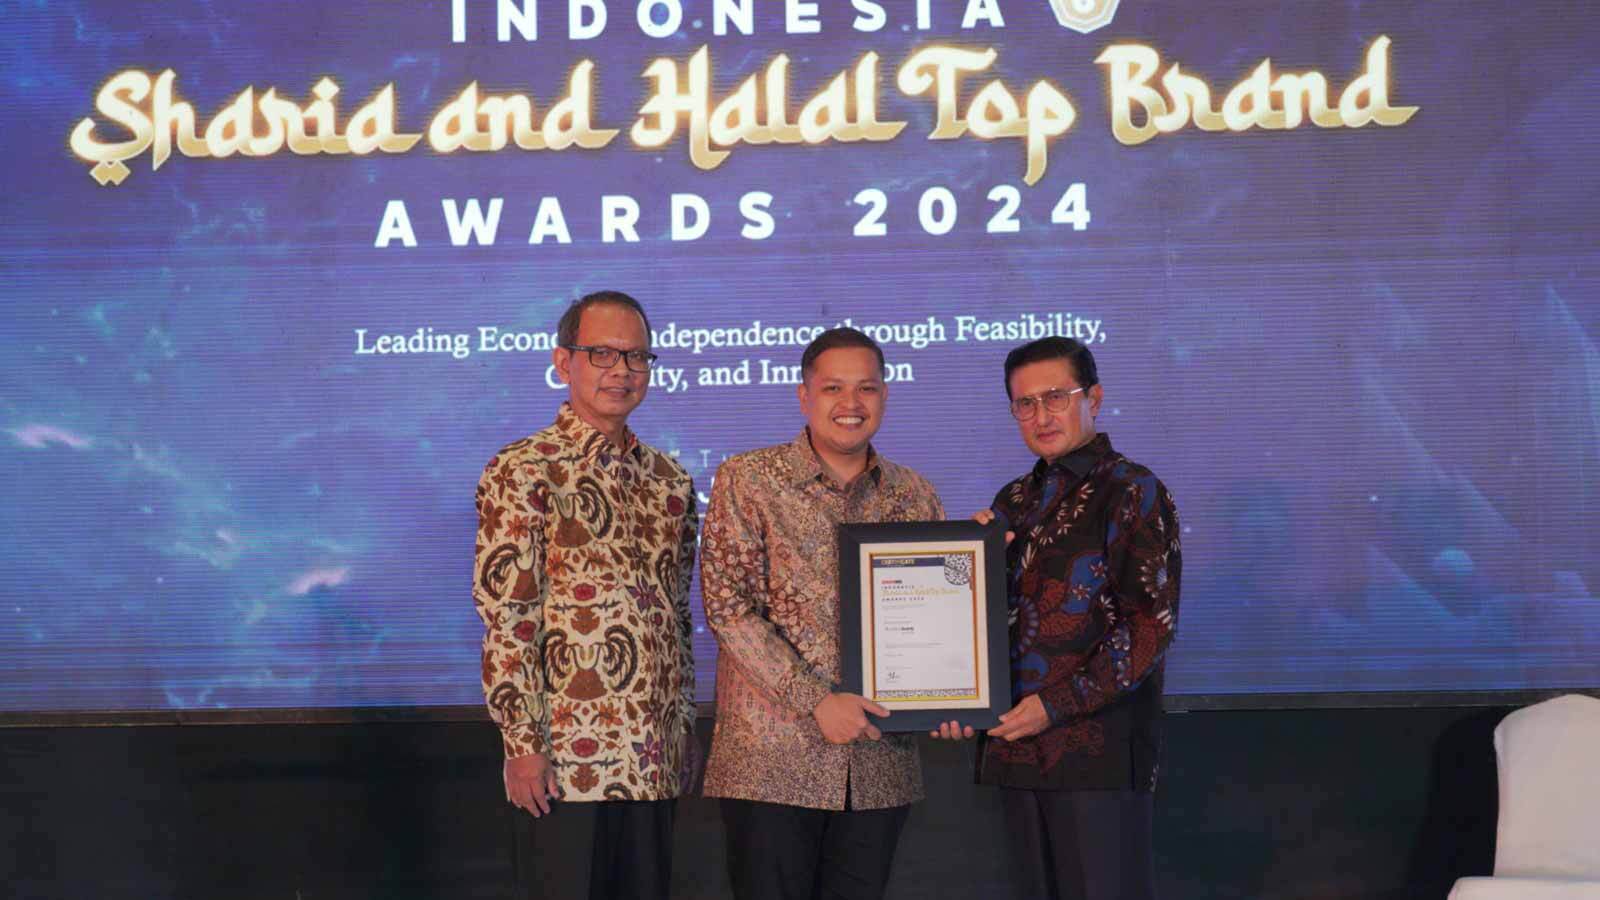 Nanobank Syariah Raih Penghargaan di Indonesia Sharia & Halal Top Brand Award 2024